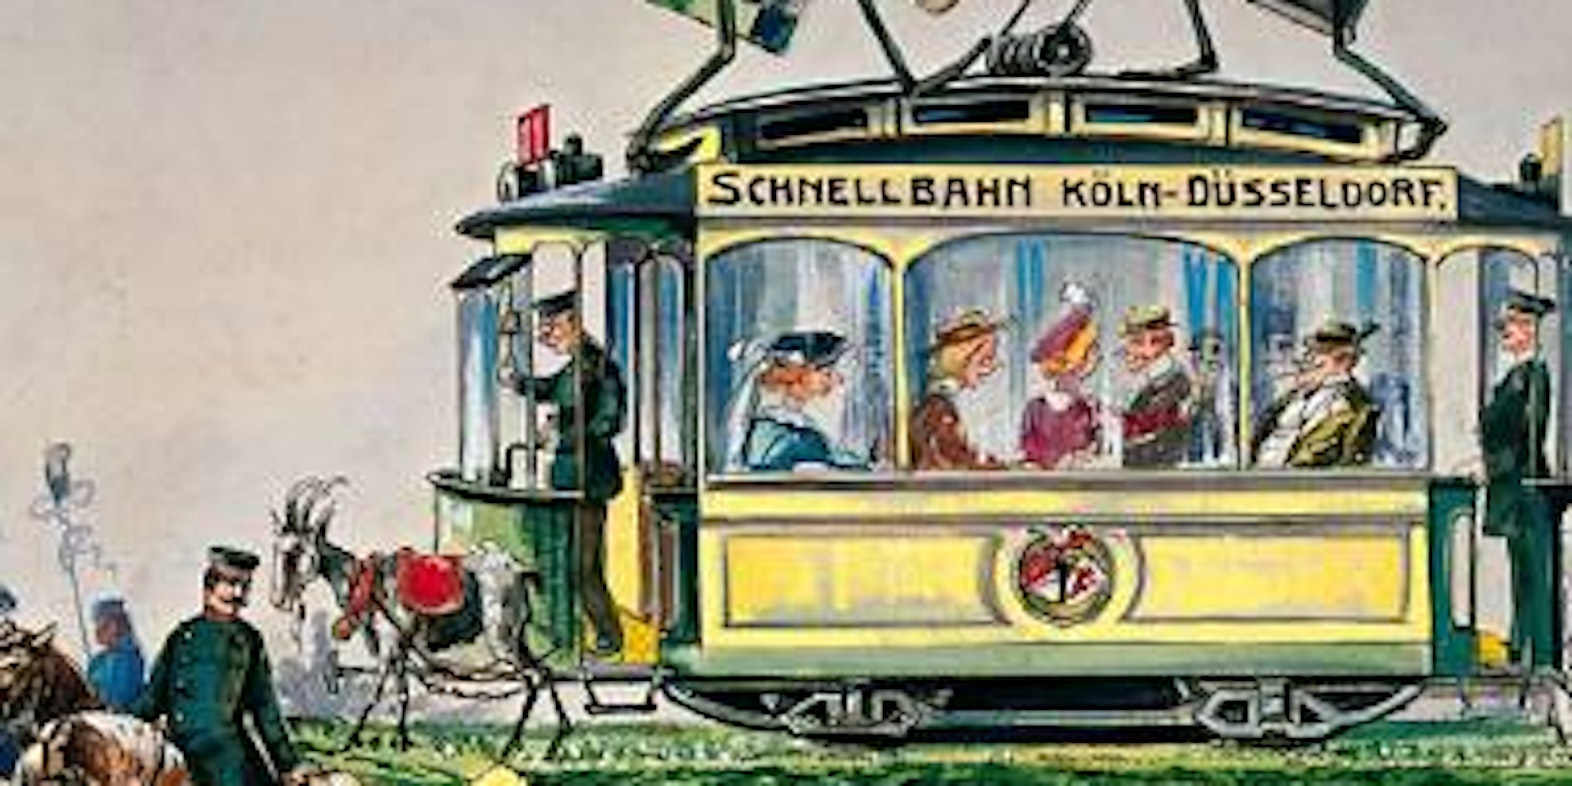 Die geplante Köln-Düsseldorfer Schnellbahn karikierte der Entwurf von Heinrich Recker, 1914: Die Rivalen Köln (4711-Flasche) und Düsseldorf (Senf) kämpfen auf dem Dach. (Bild: Kölnisches Stadtmuseum)